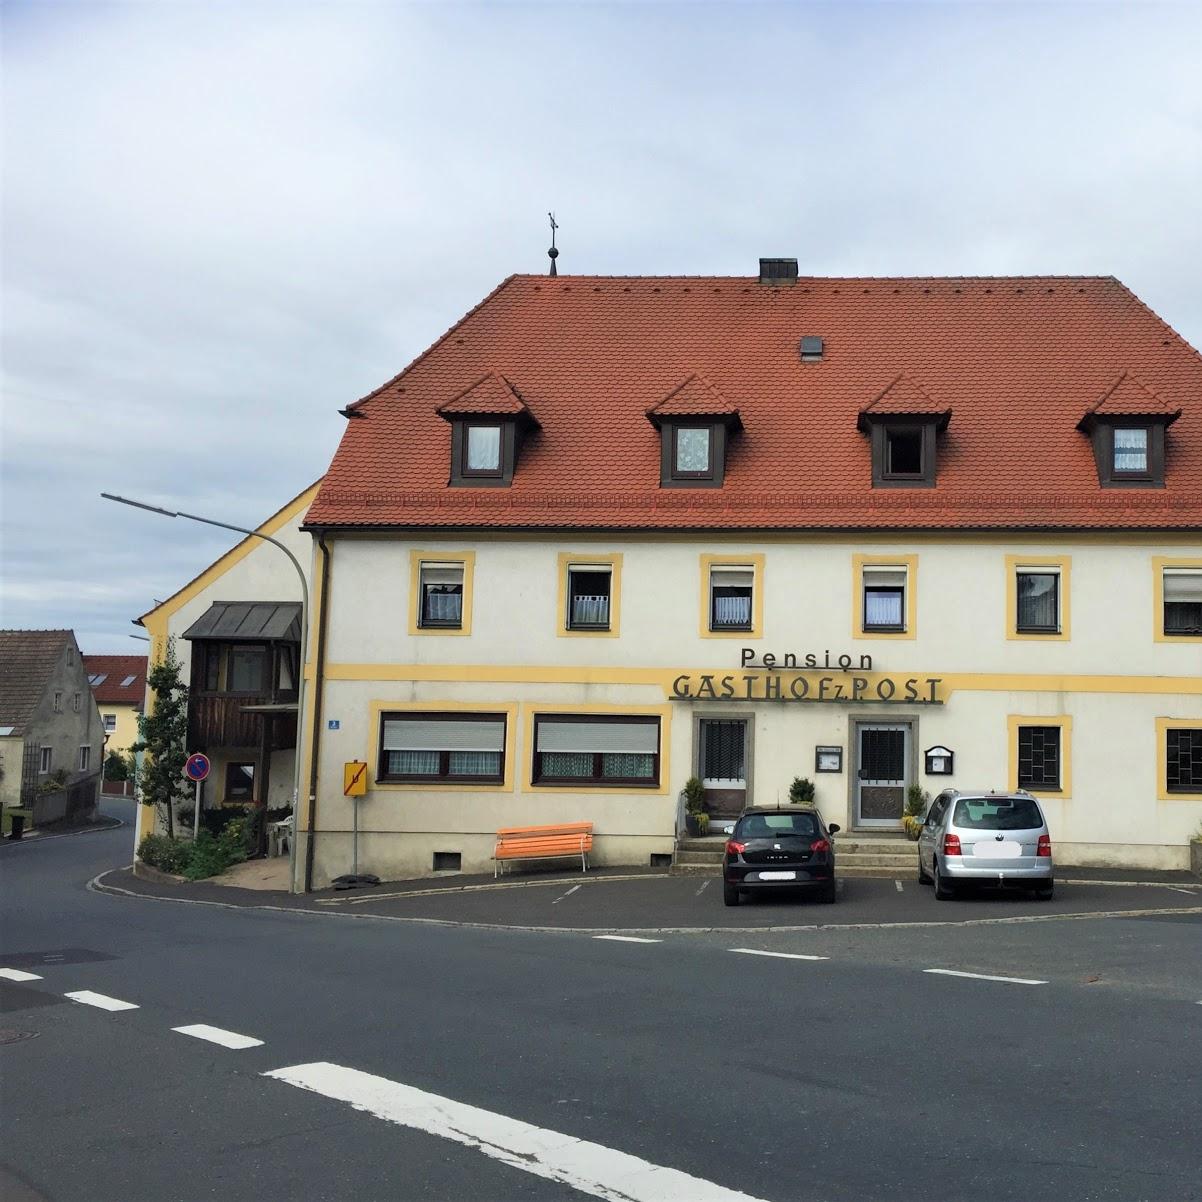 Restaurant "Pension zur Post" in Plößberg